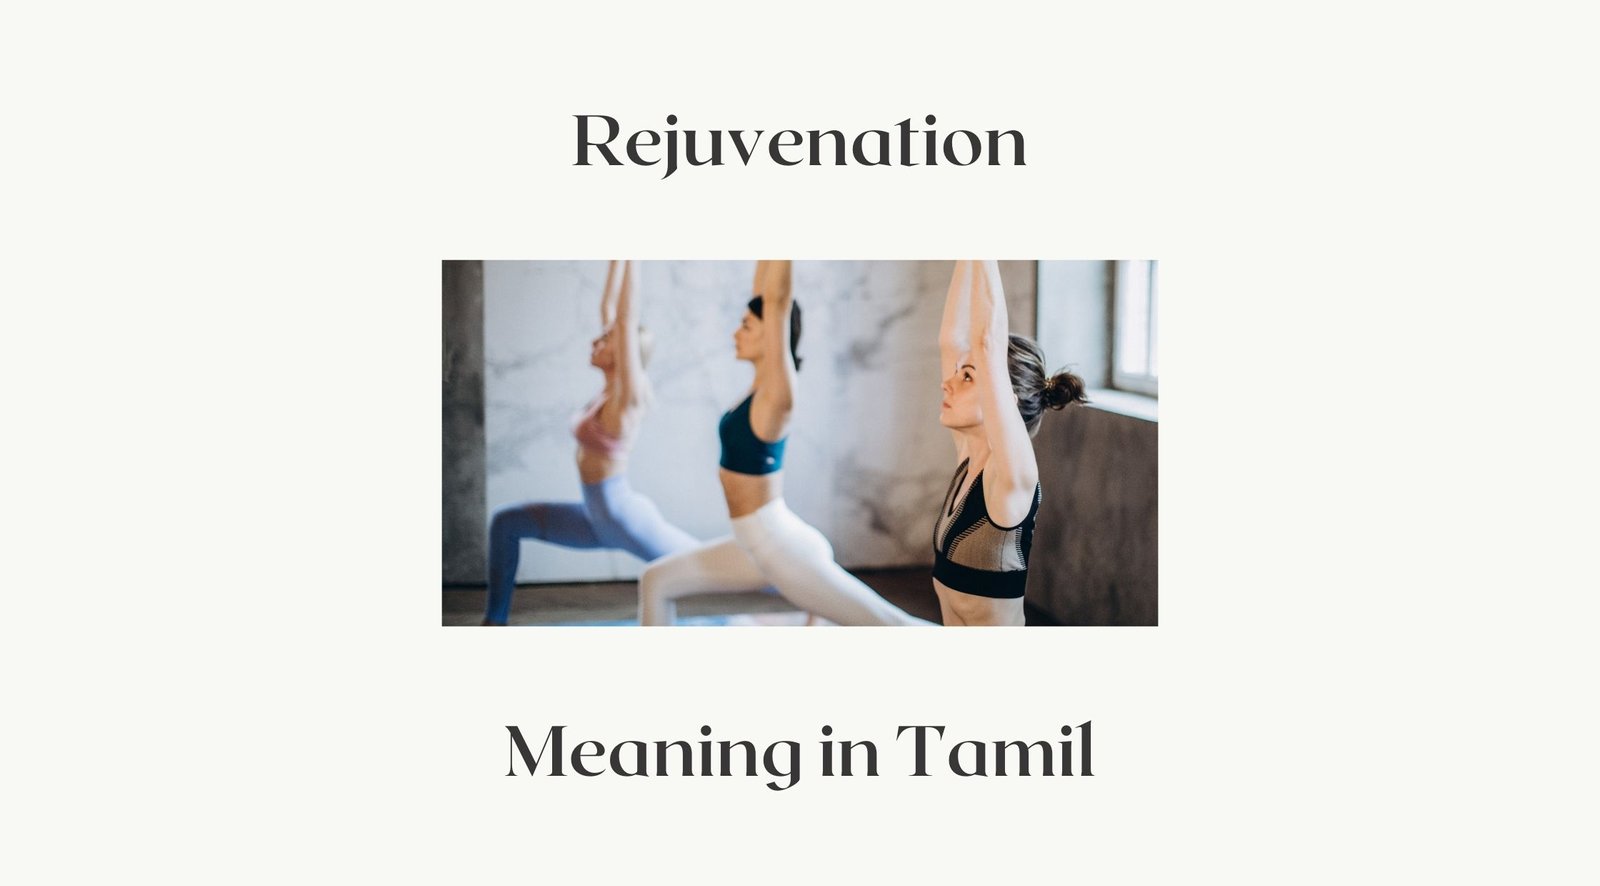 Adho Mukha Shvanasana & Artha Pinsa Mayurasana Tamil | Downward Facing Dog  Pose | Yoga Asanas Tamil - YouTube